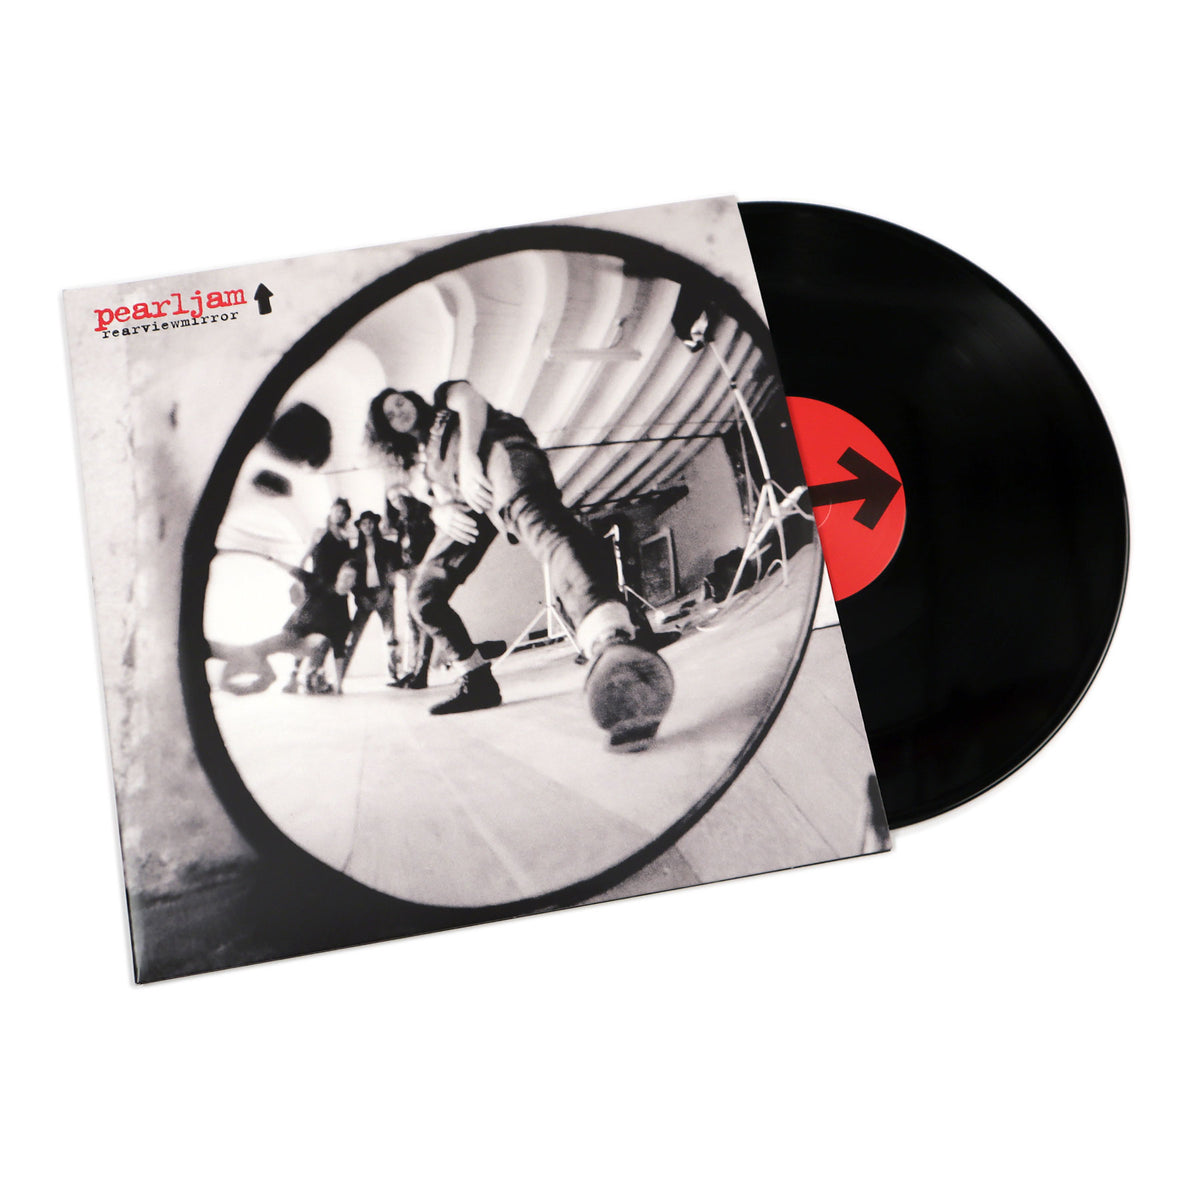 Pearl Jam: Rearview Mirror - Greatest Hits 1991-2003 Vol.1 Vinyl 2LP —